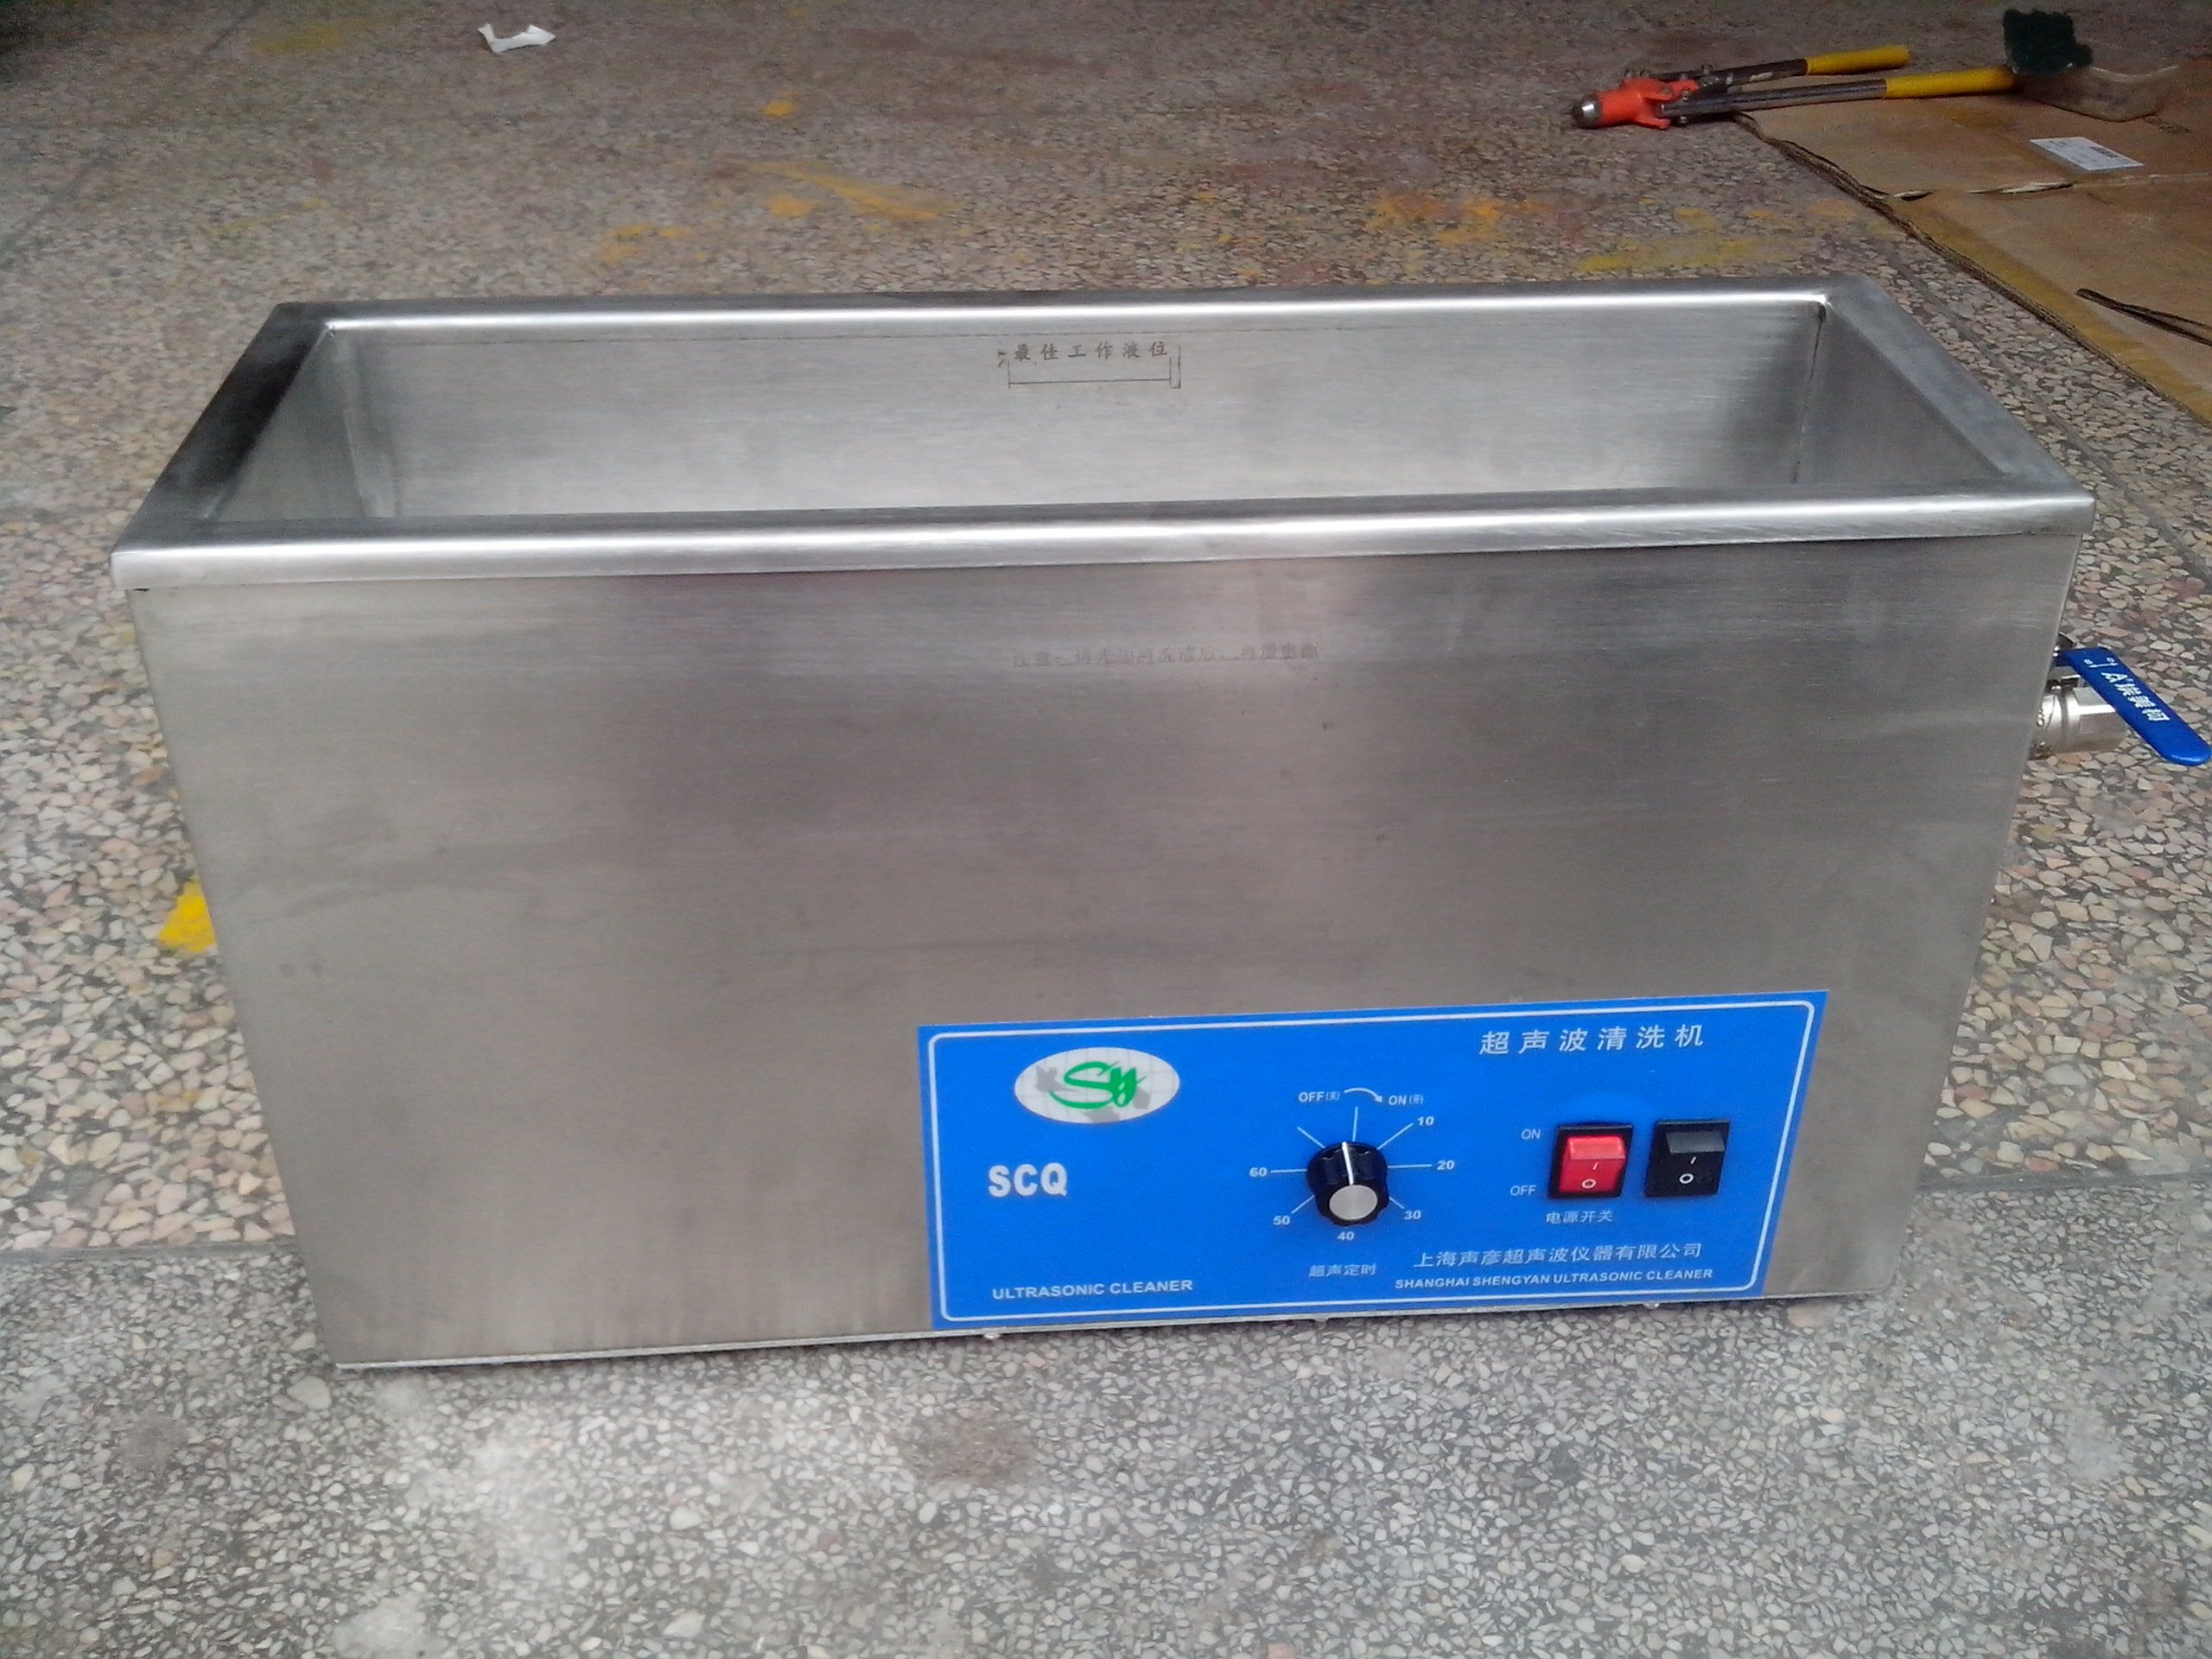 清洗、脱气、乳化、混匀、提取用超声波清洗器SCQ-­4201C